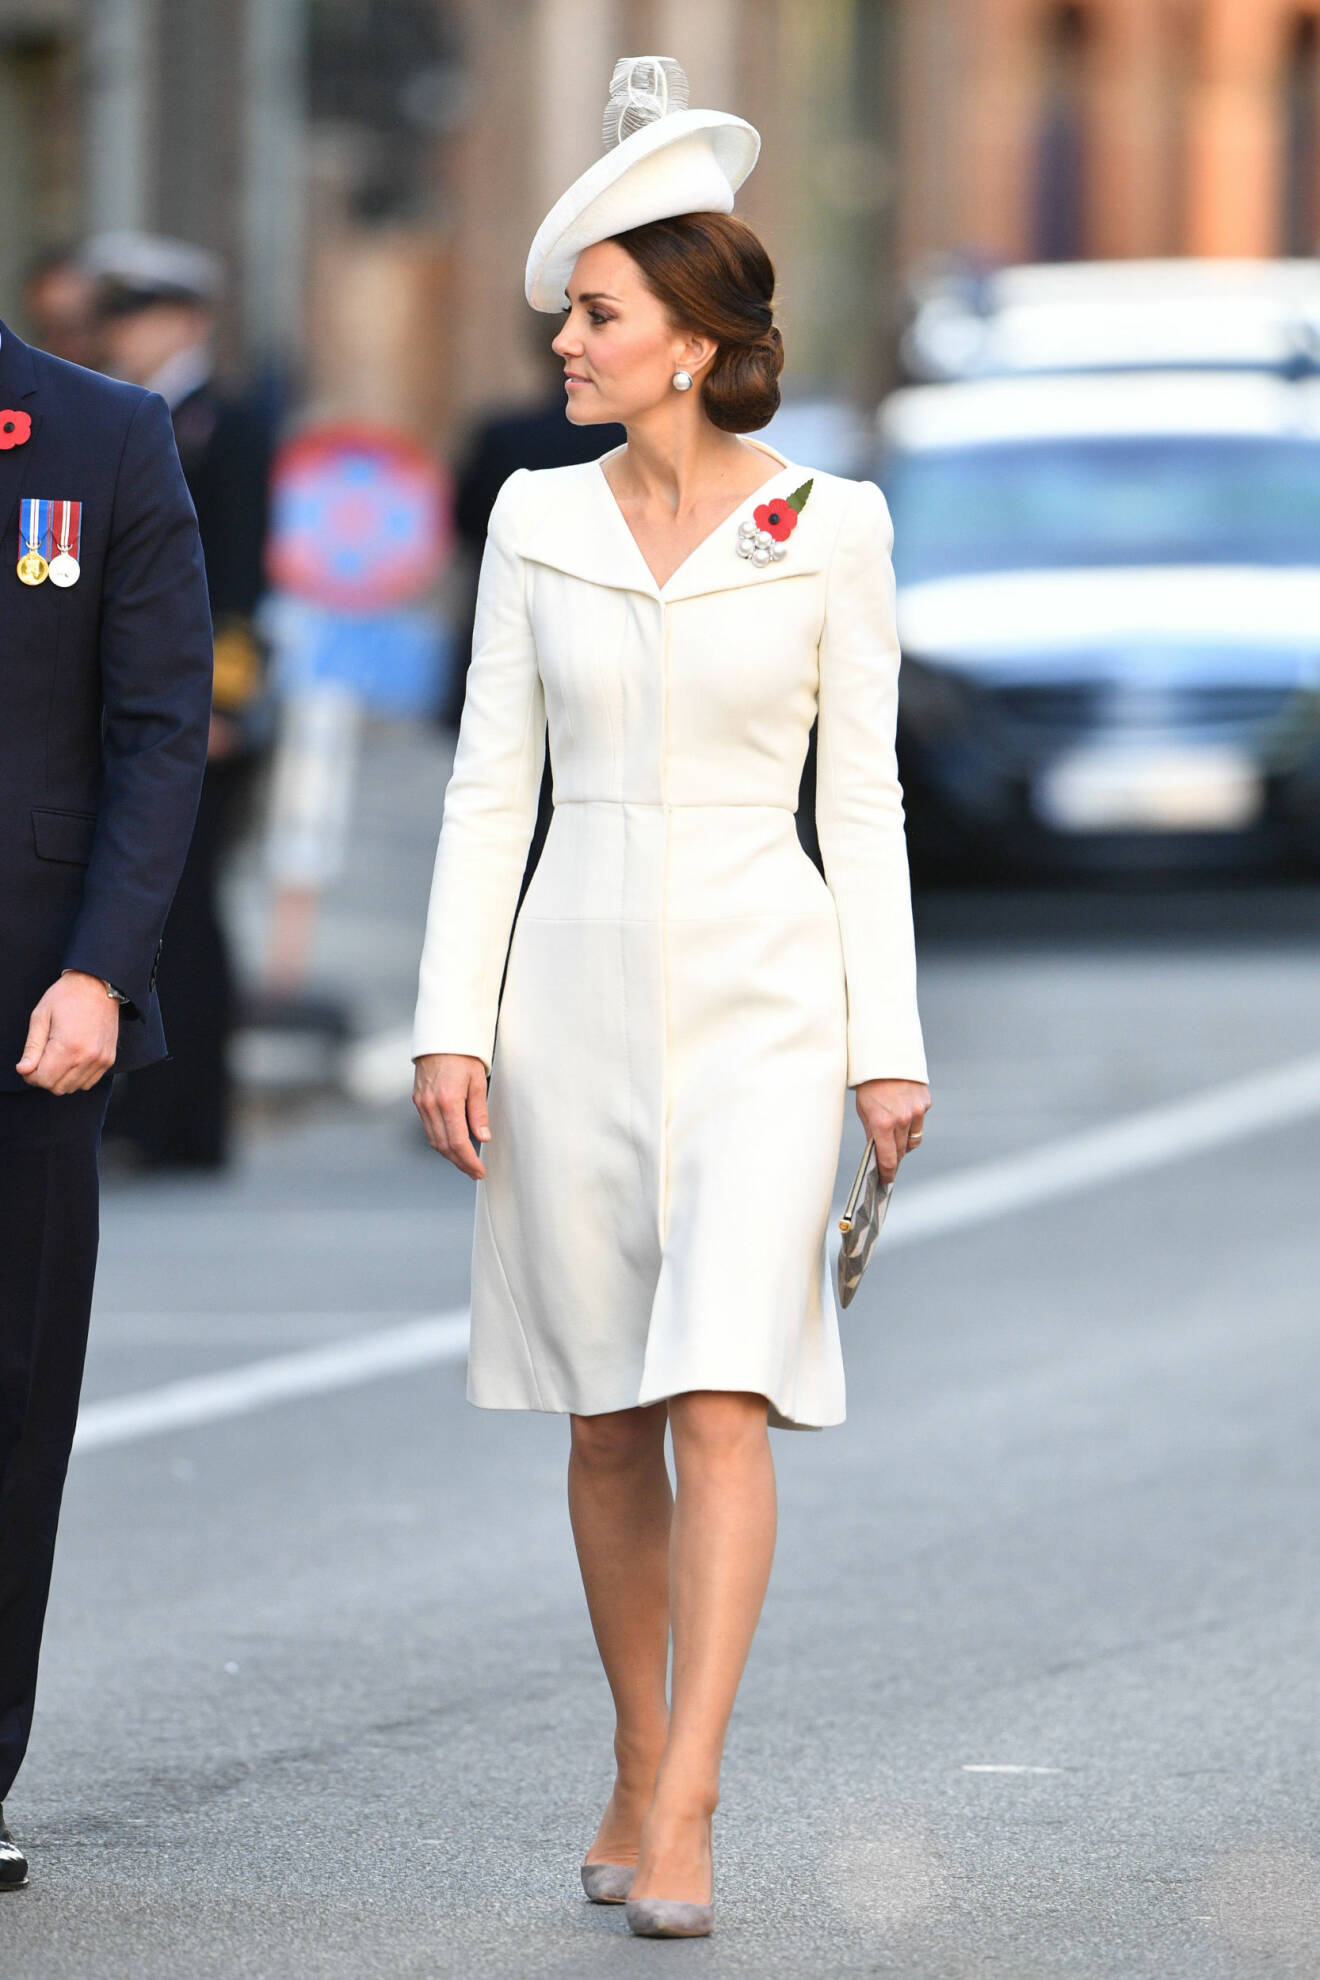 Kate Middleton i cremefärgad klänning med hatt och håret har hon i en prydlig knut i nacken.